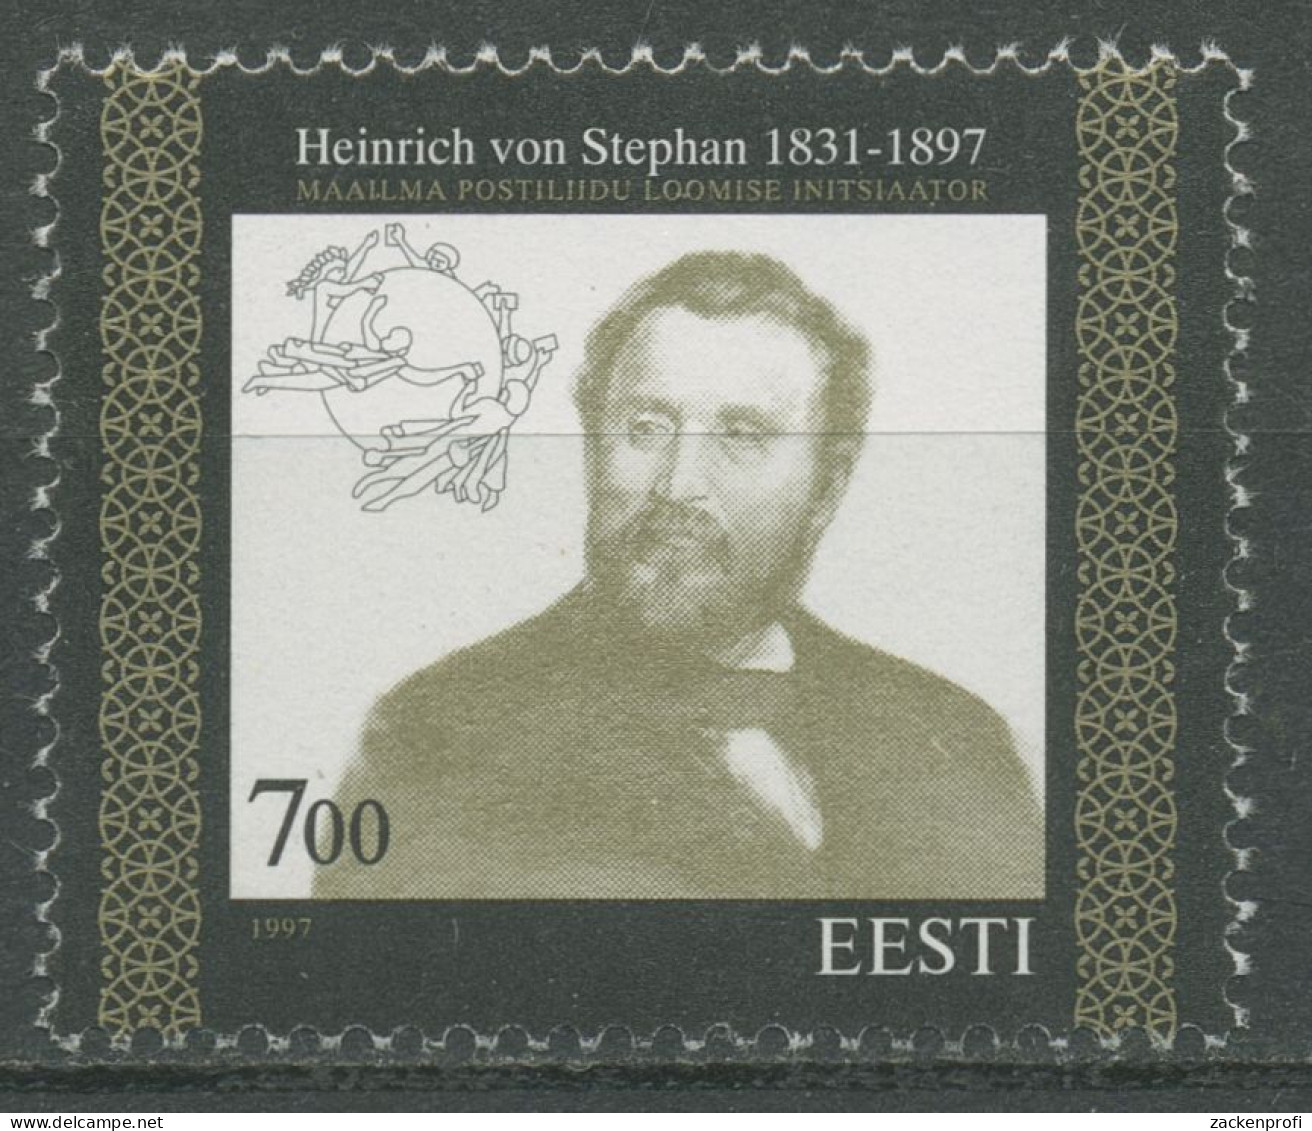 Estland 1997 Weltpostverein UPU Heinrich V. Stephan 300 Postfrisch - Estland